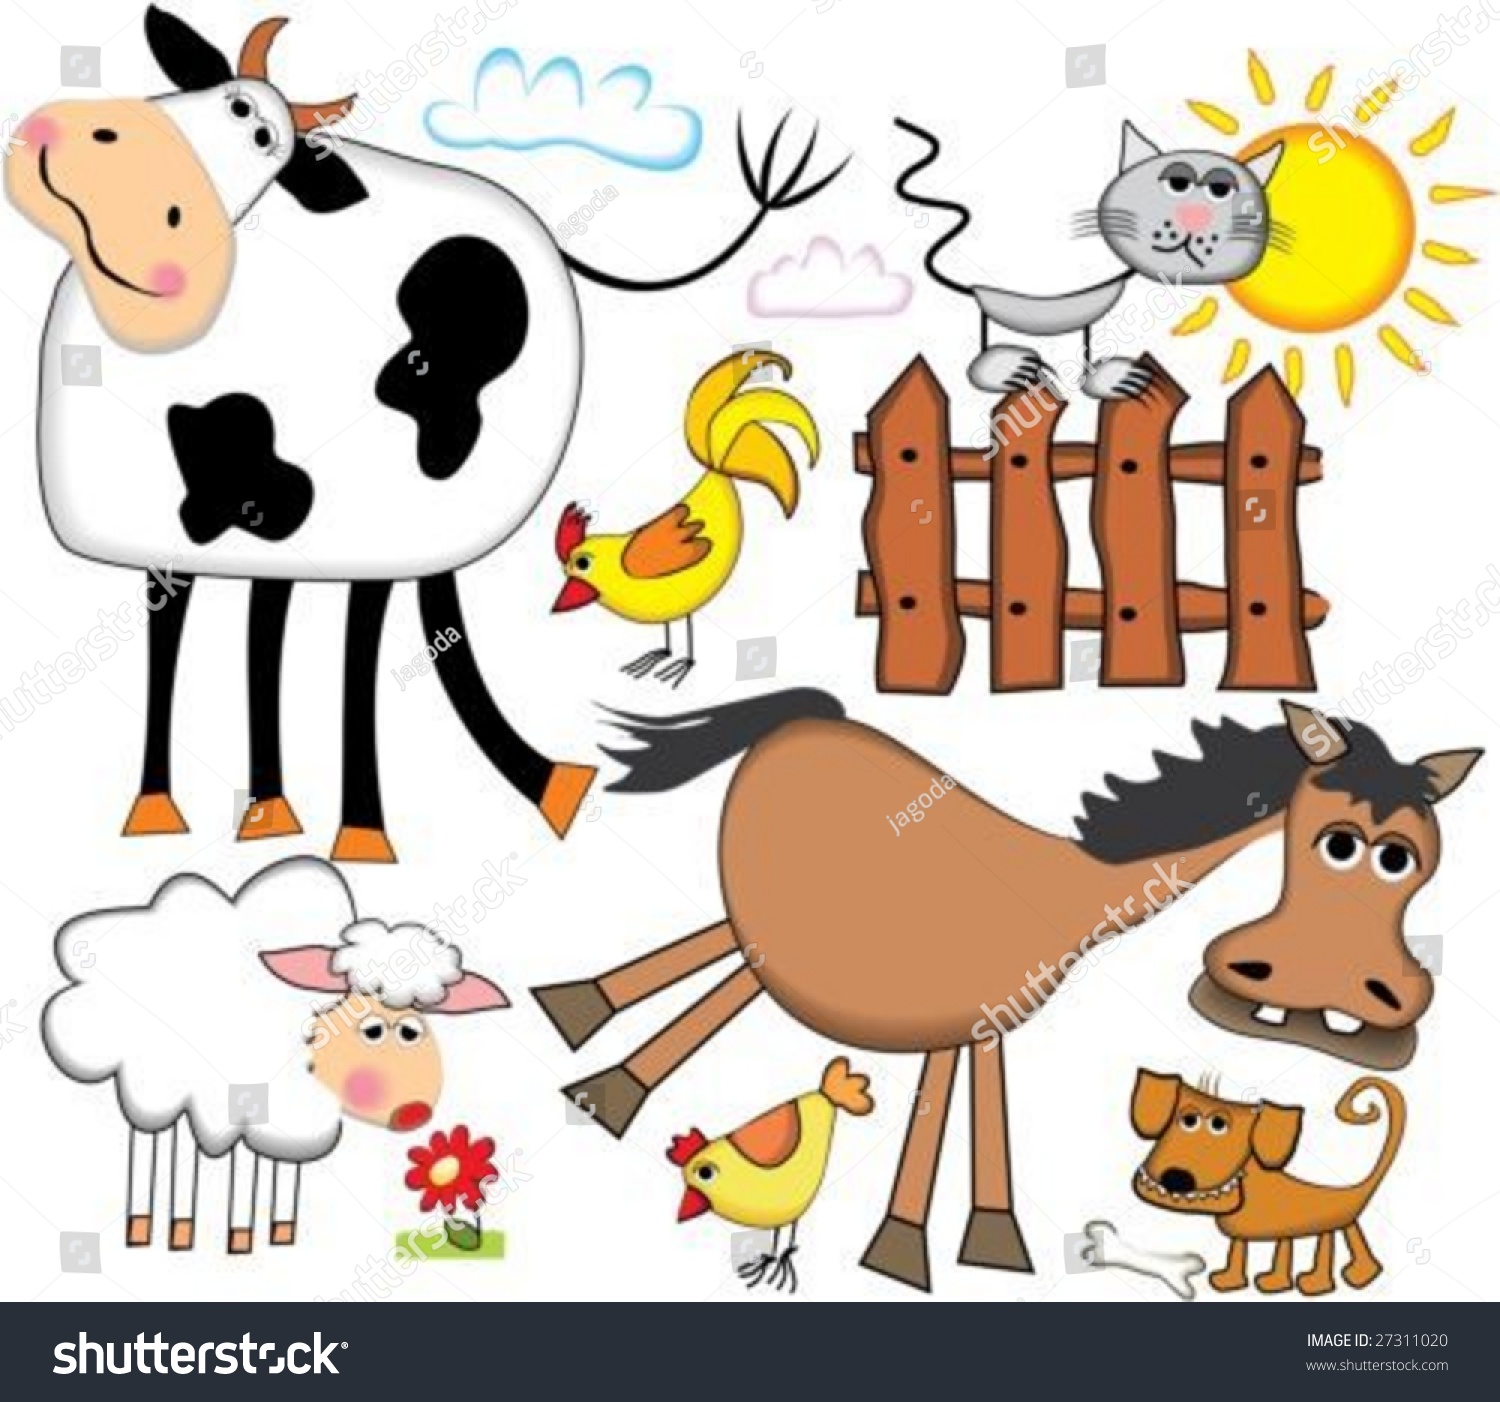 Farm Animals Stock Vector Illustration 27311020 : Shutterstock